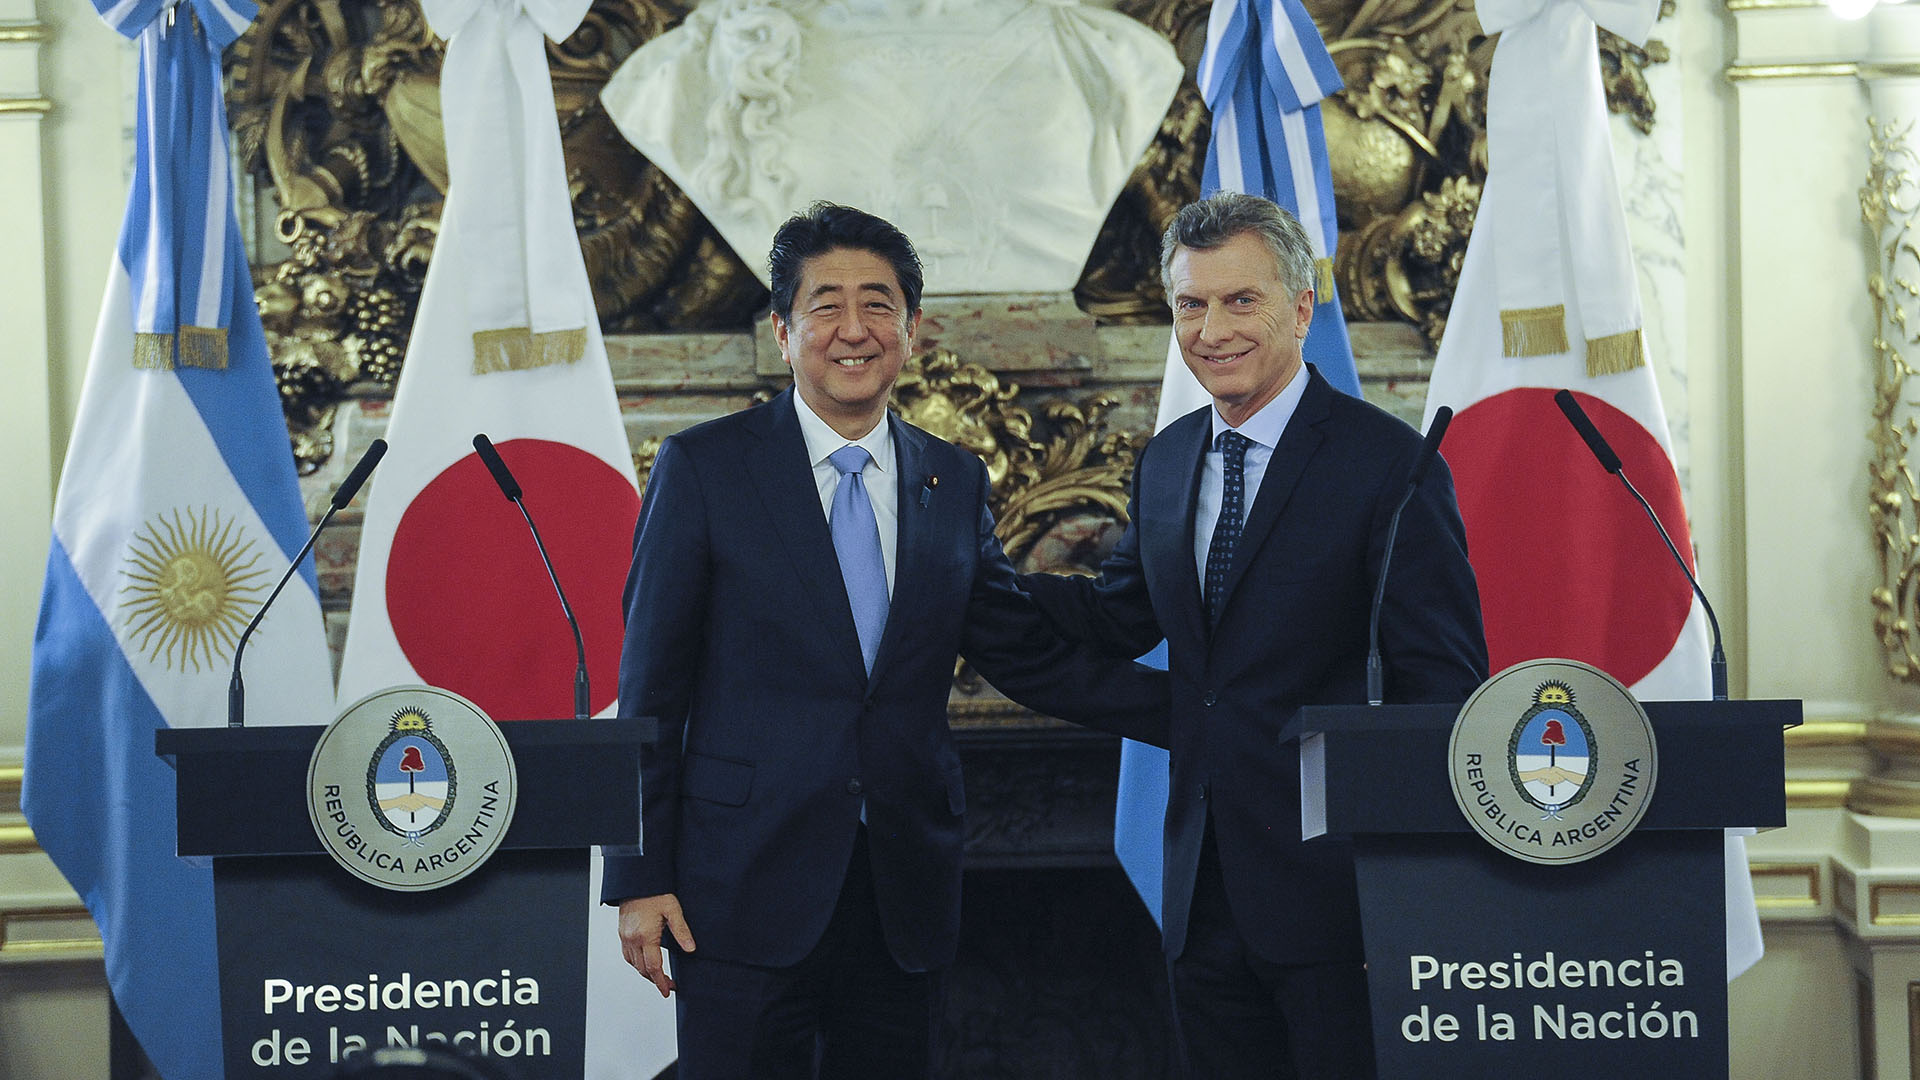 Shinzo Abe er en av verdens ledere som deltok på G20-toppmøtet organisert i Buenos Aires (Télam).